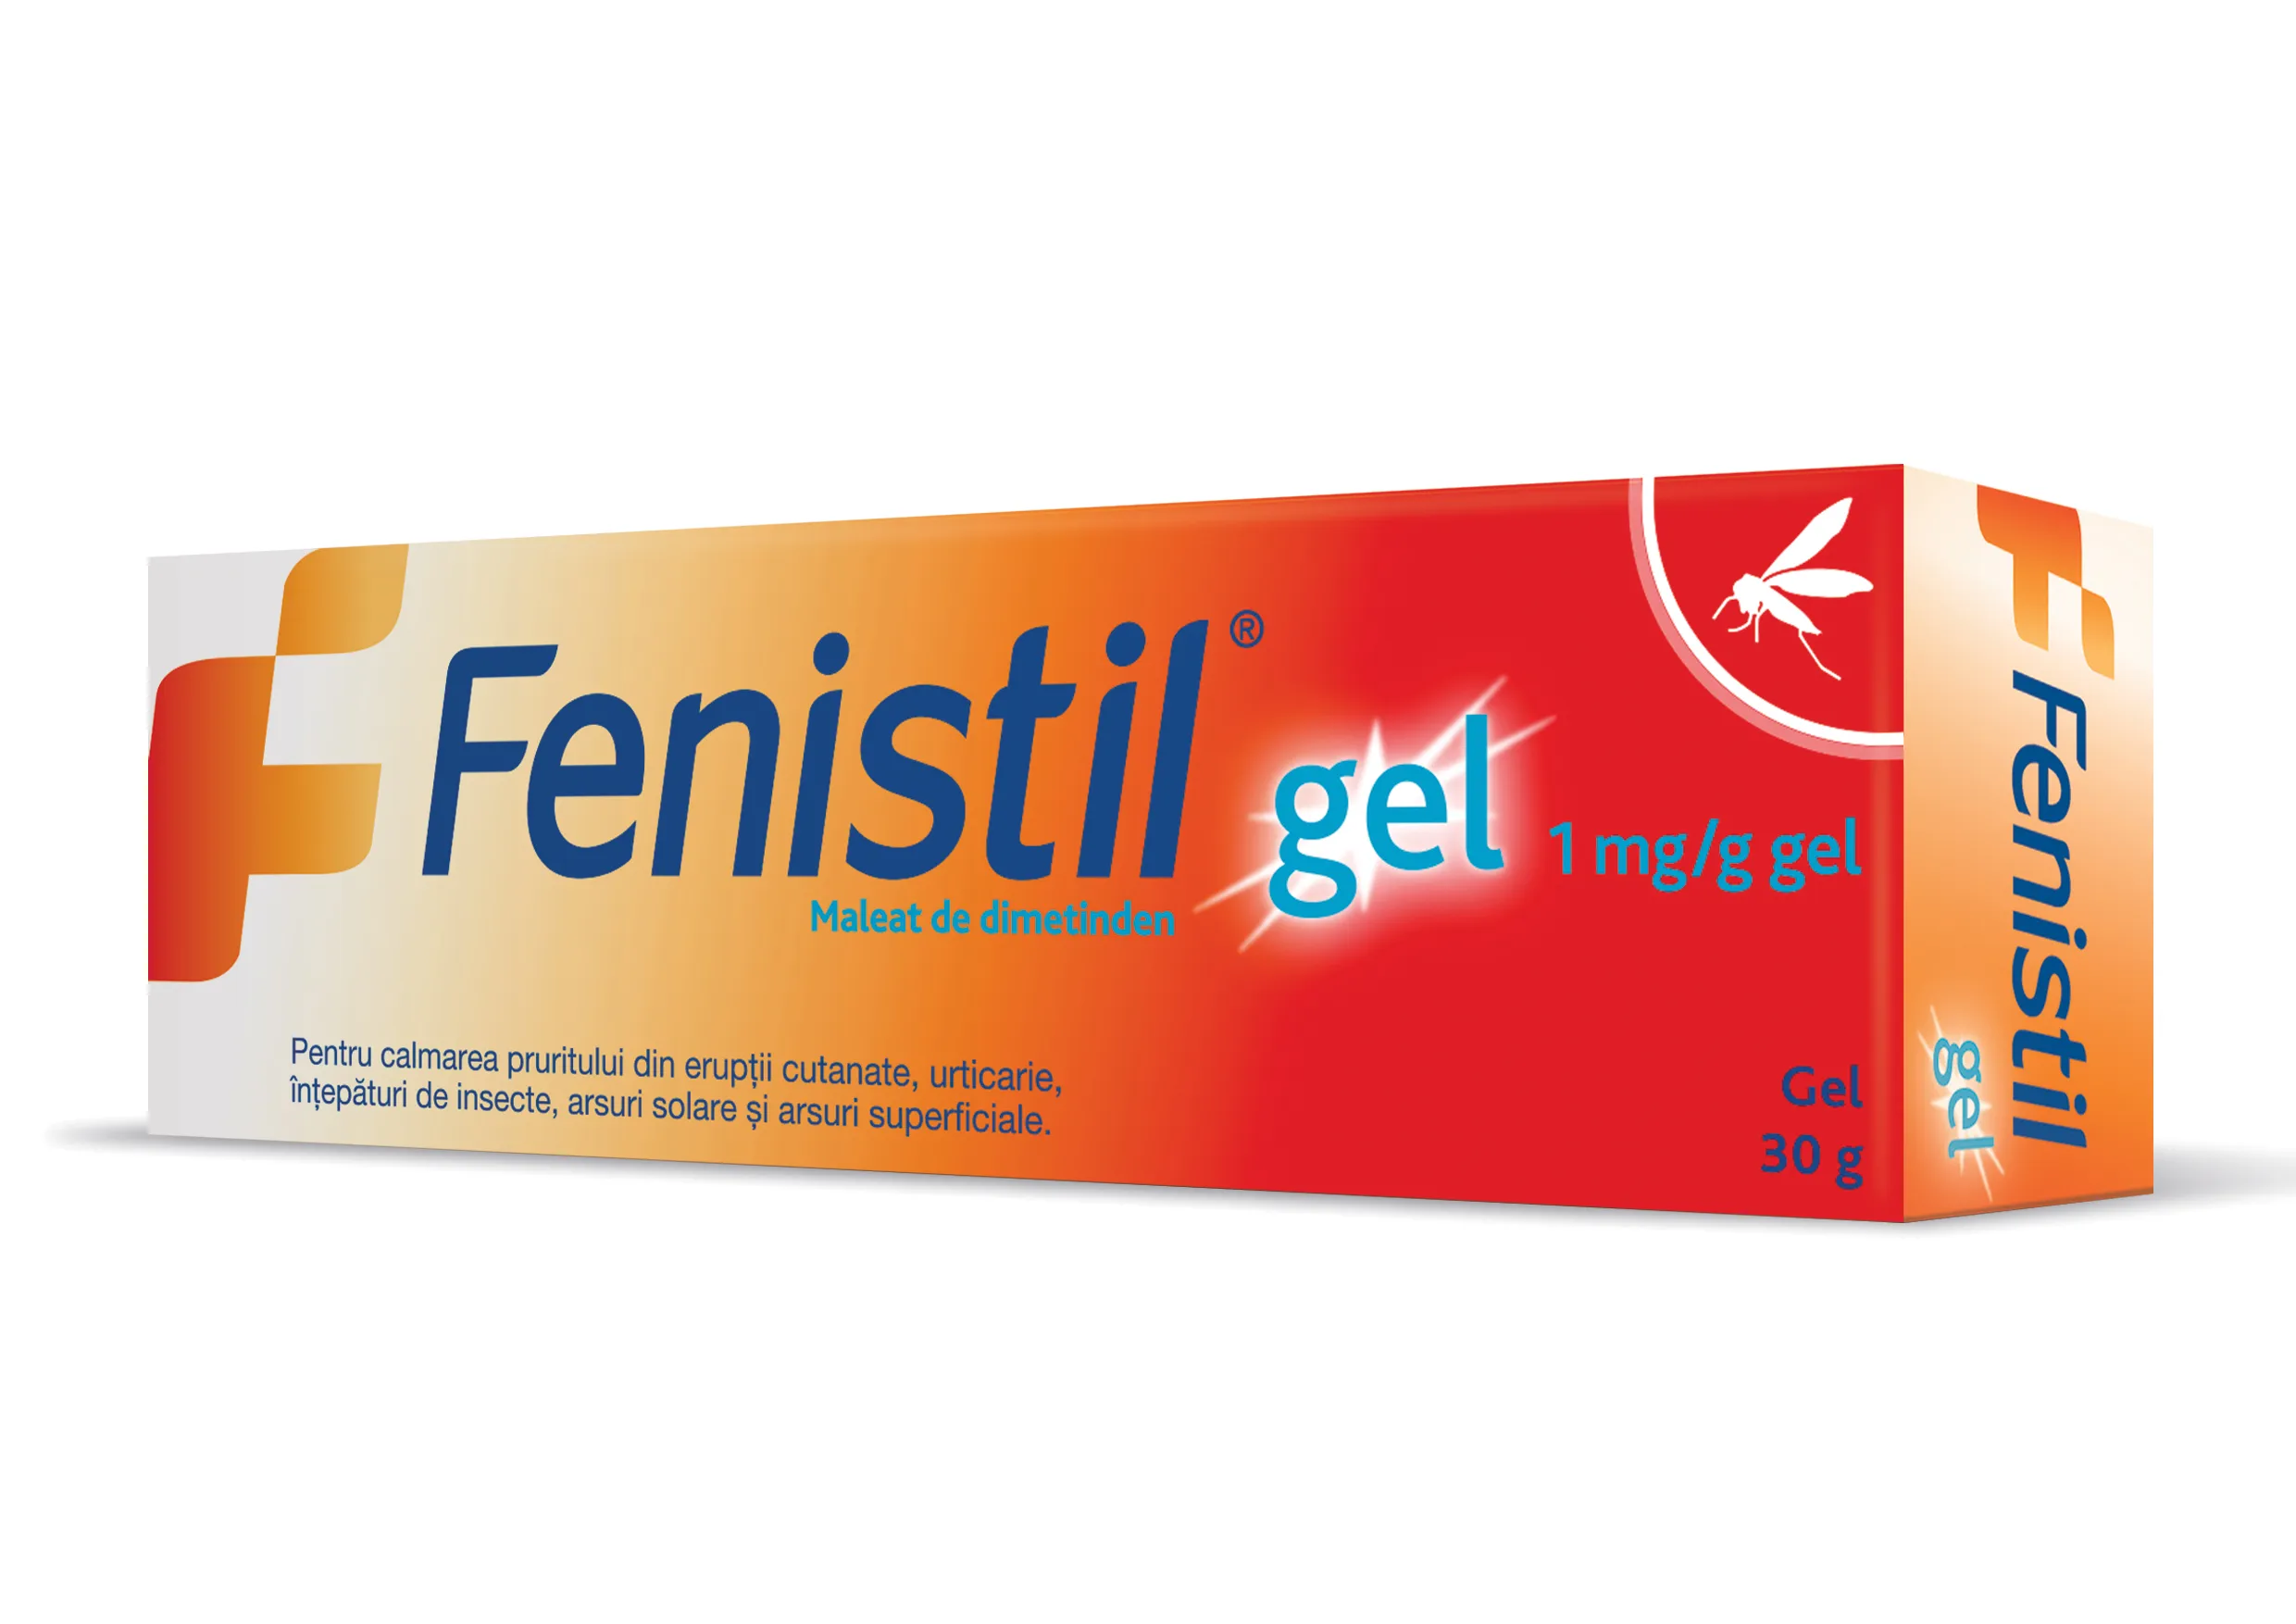 Fenistil 1mg/g gel 30g